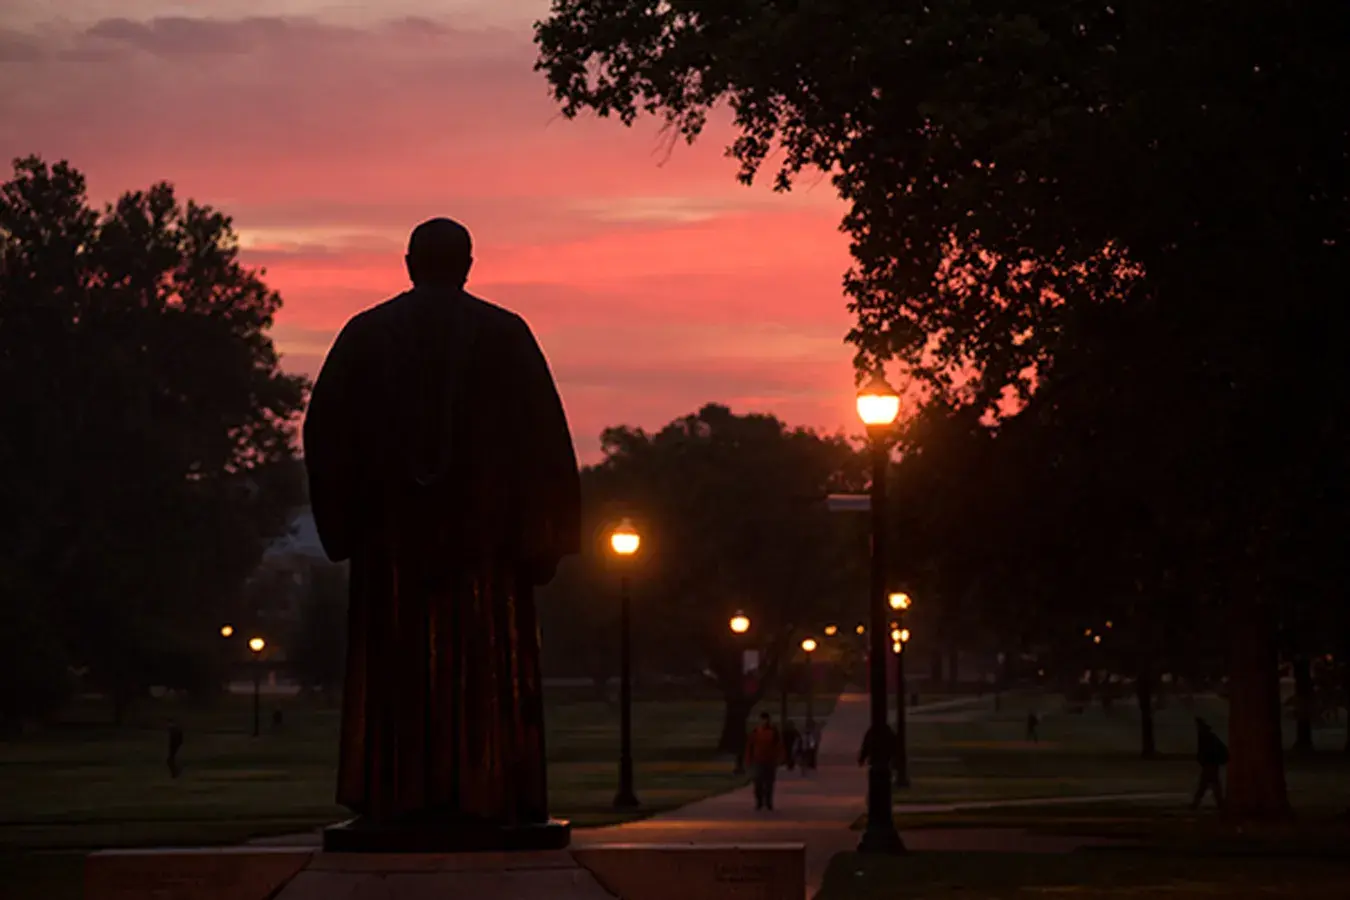 Campus statue at dusk